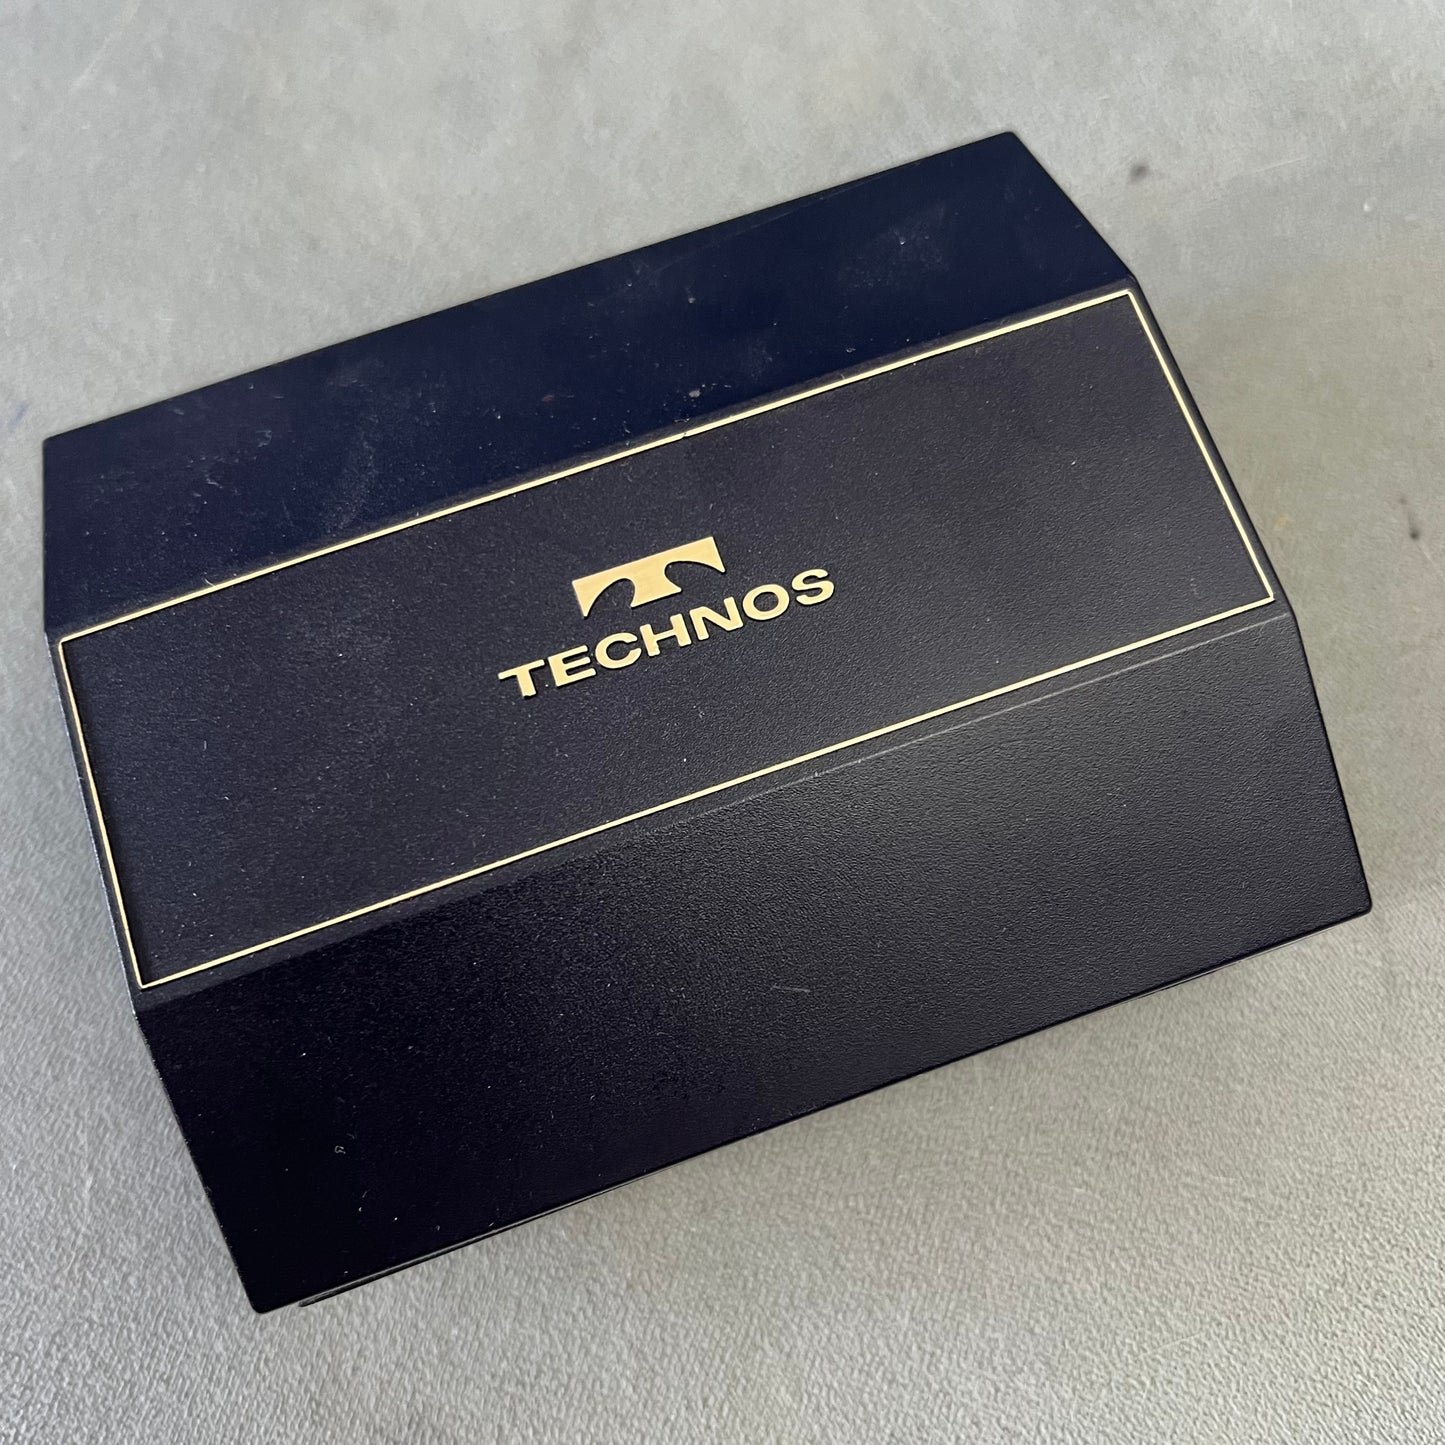 TECHNOS Blue Box 4.75x3.90x2 inches